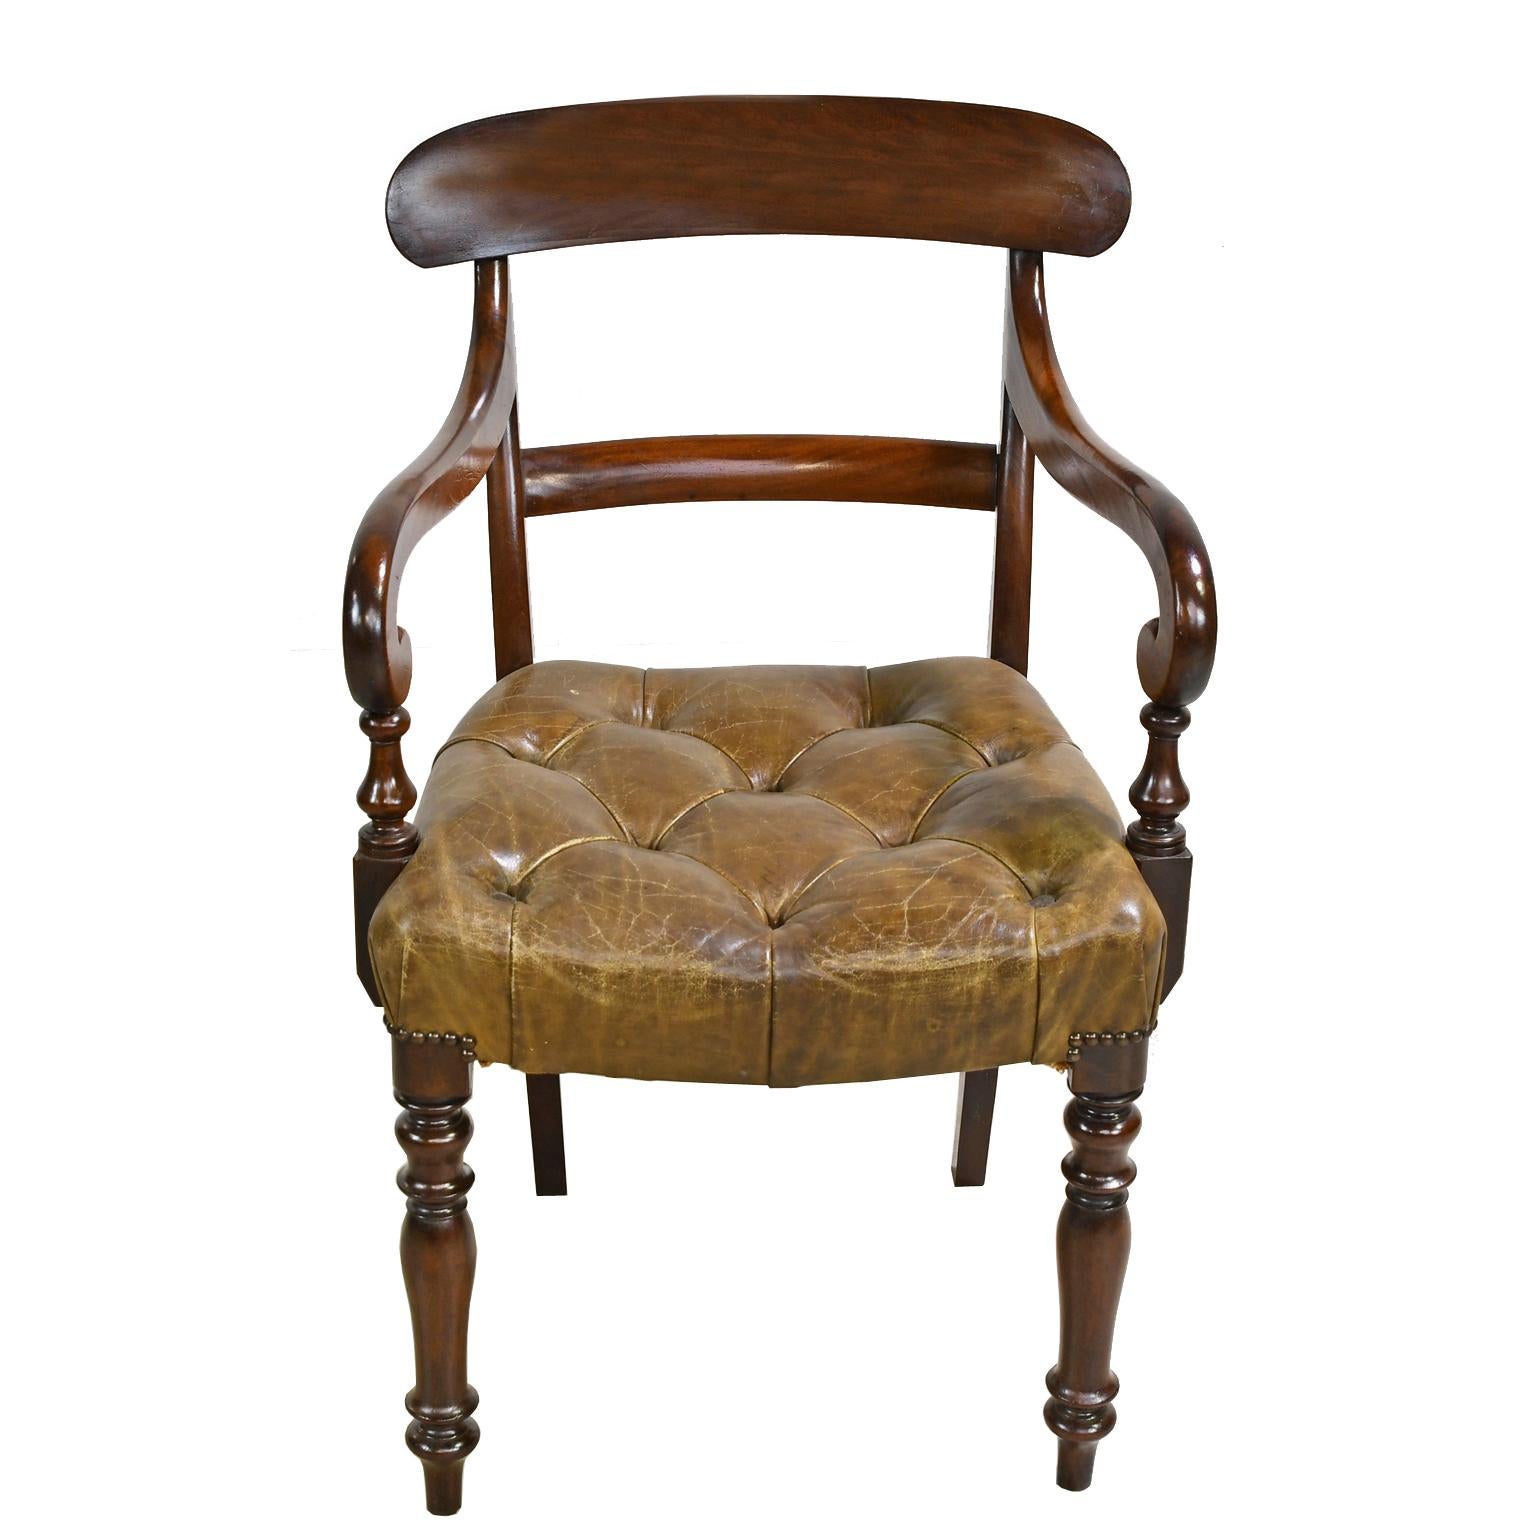 Ein frühviktorianischer Sessel aus Mahagoni mit geschwungener oberer Schiene, geschwungenen Armlehnen, gedrechselten Vorderbeinen und Säbelbeinen an der Rückseite. Der Sitz ist mit getuftetem, beige/camelfarbenem Leder mit Messingnägeln gepolstert.